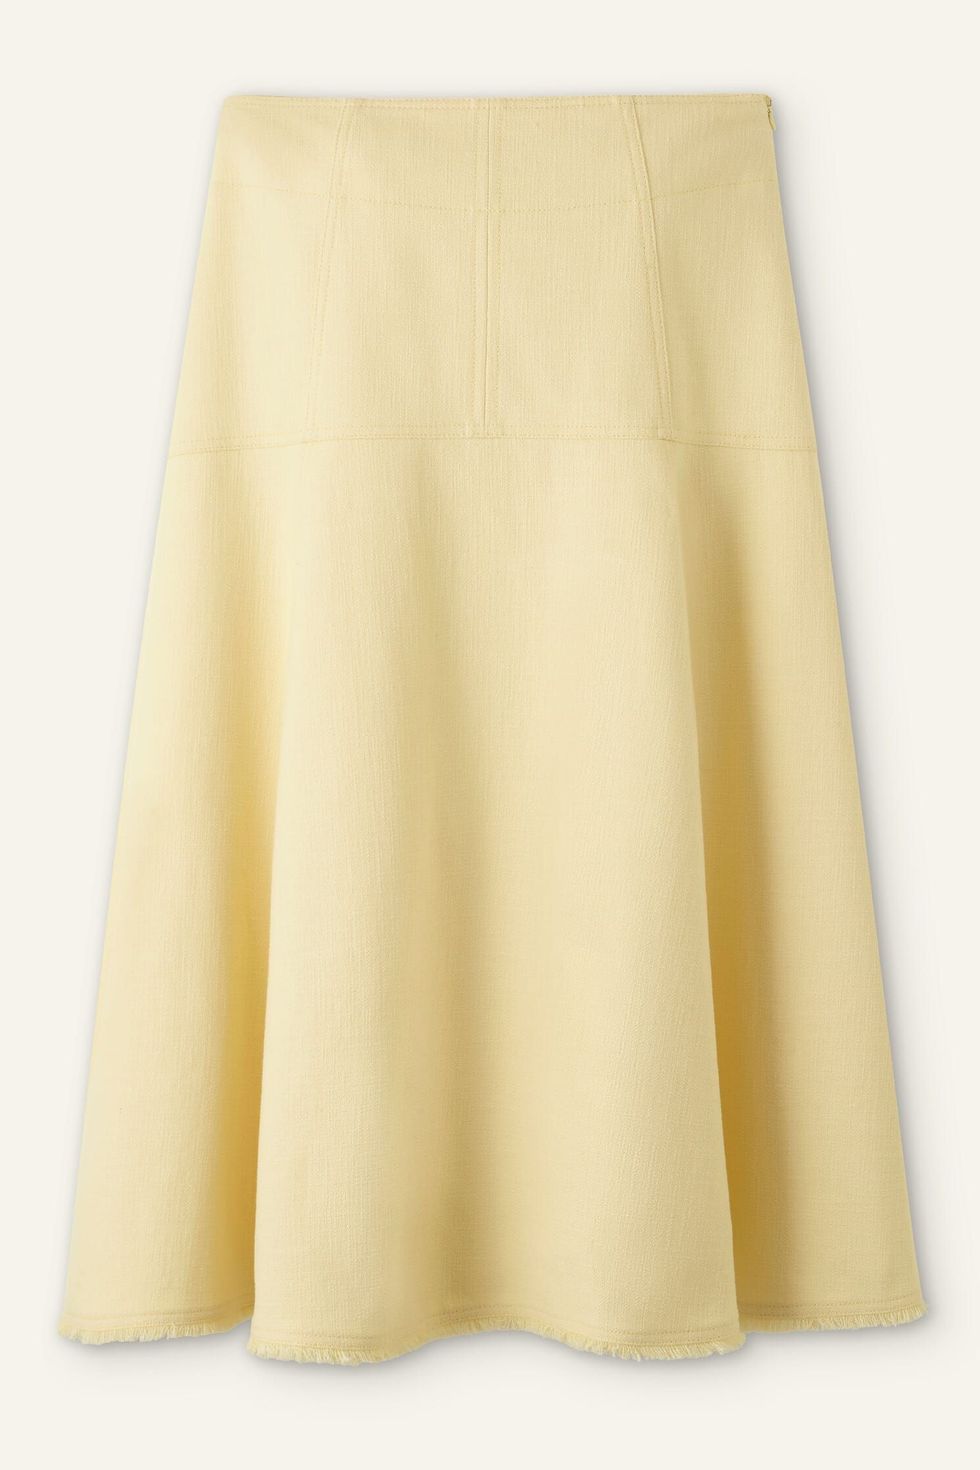 Textured Cotton-Blend Skirt